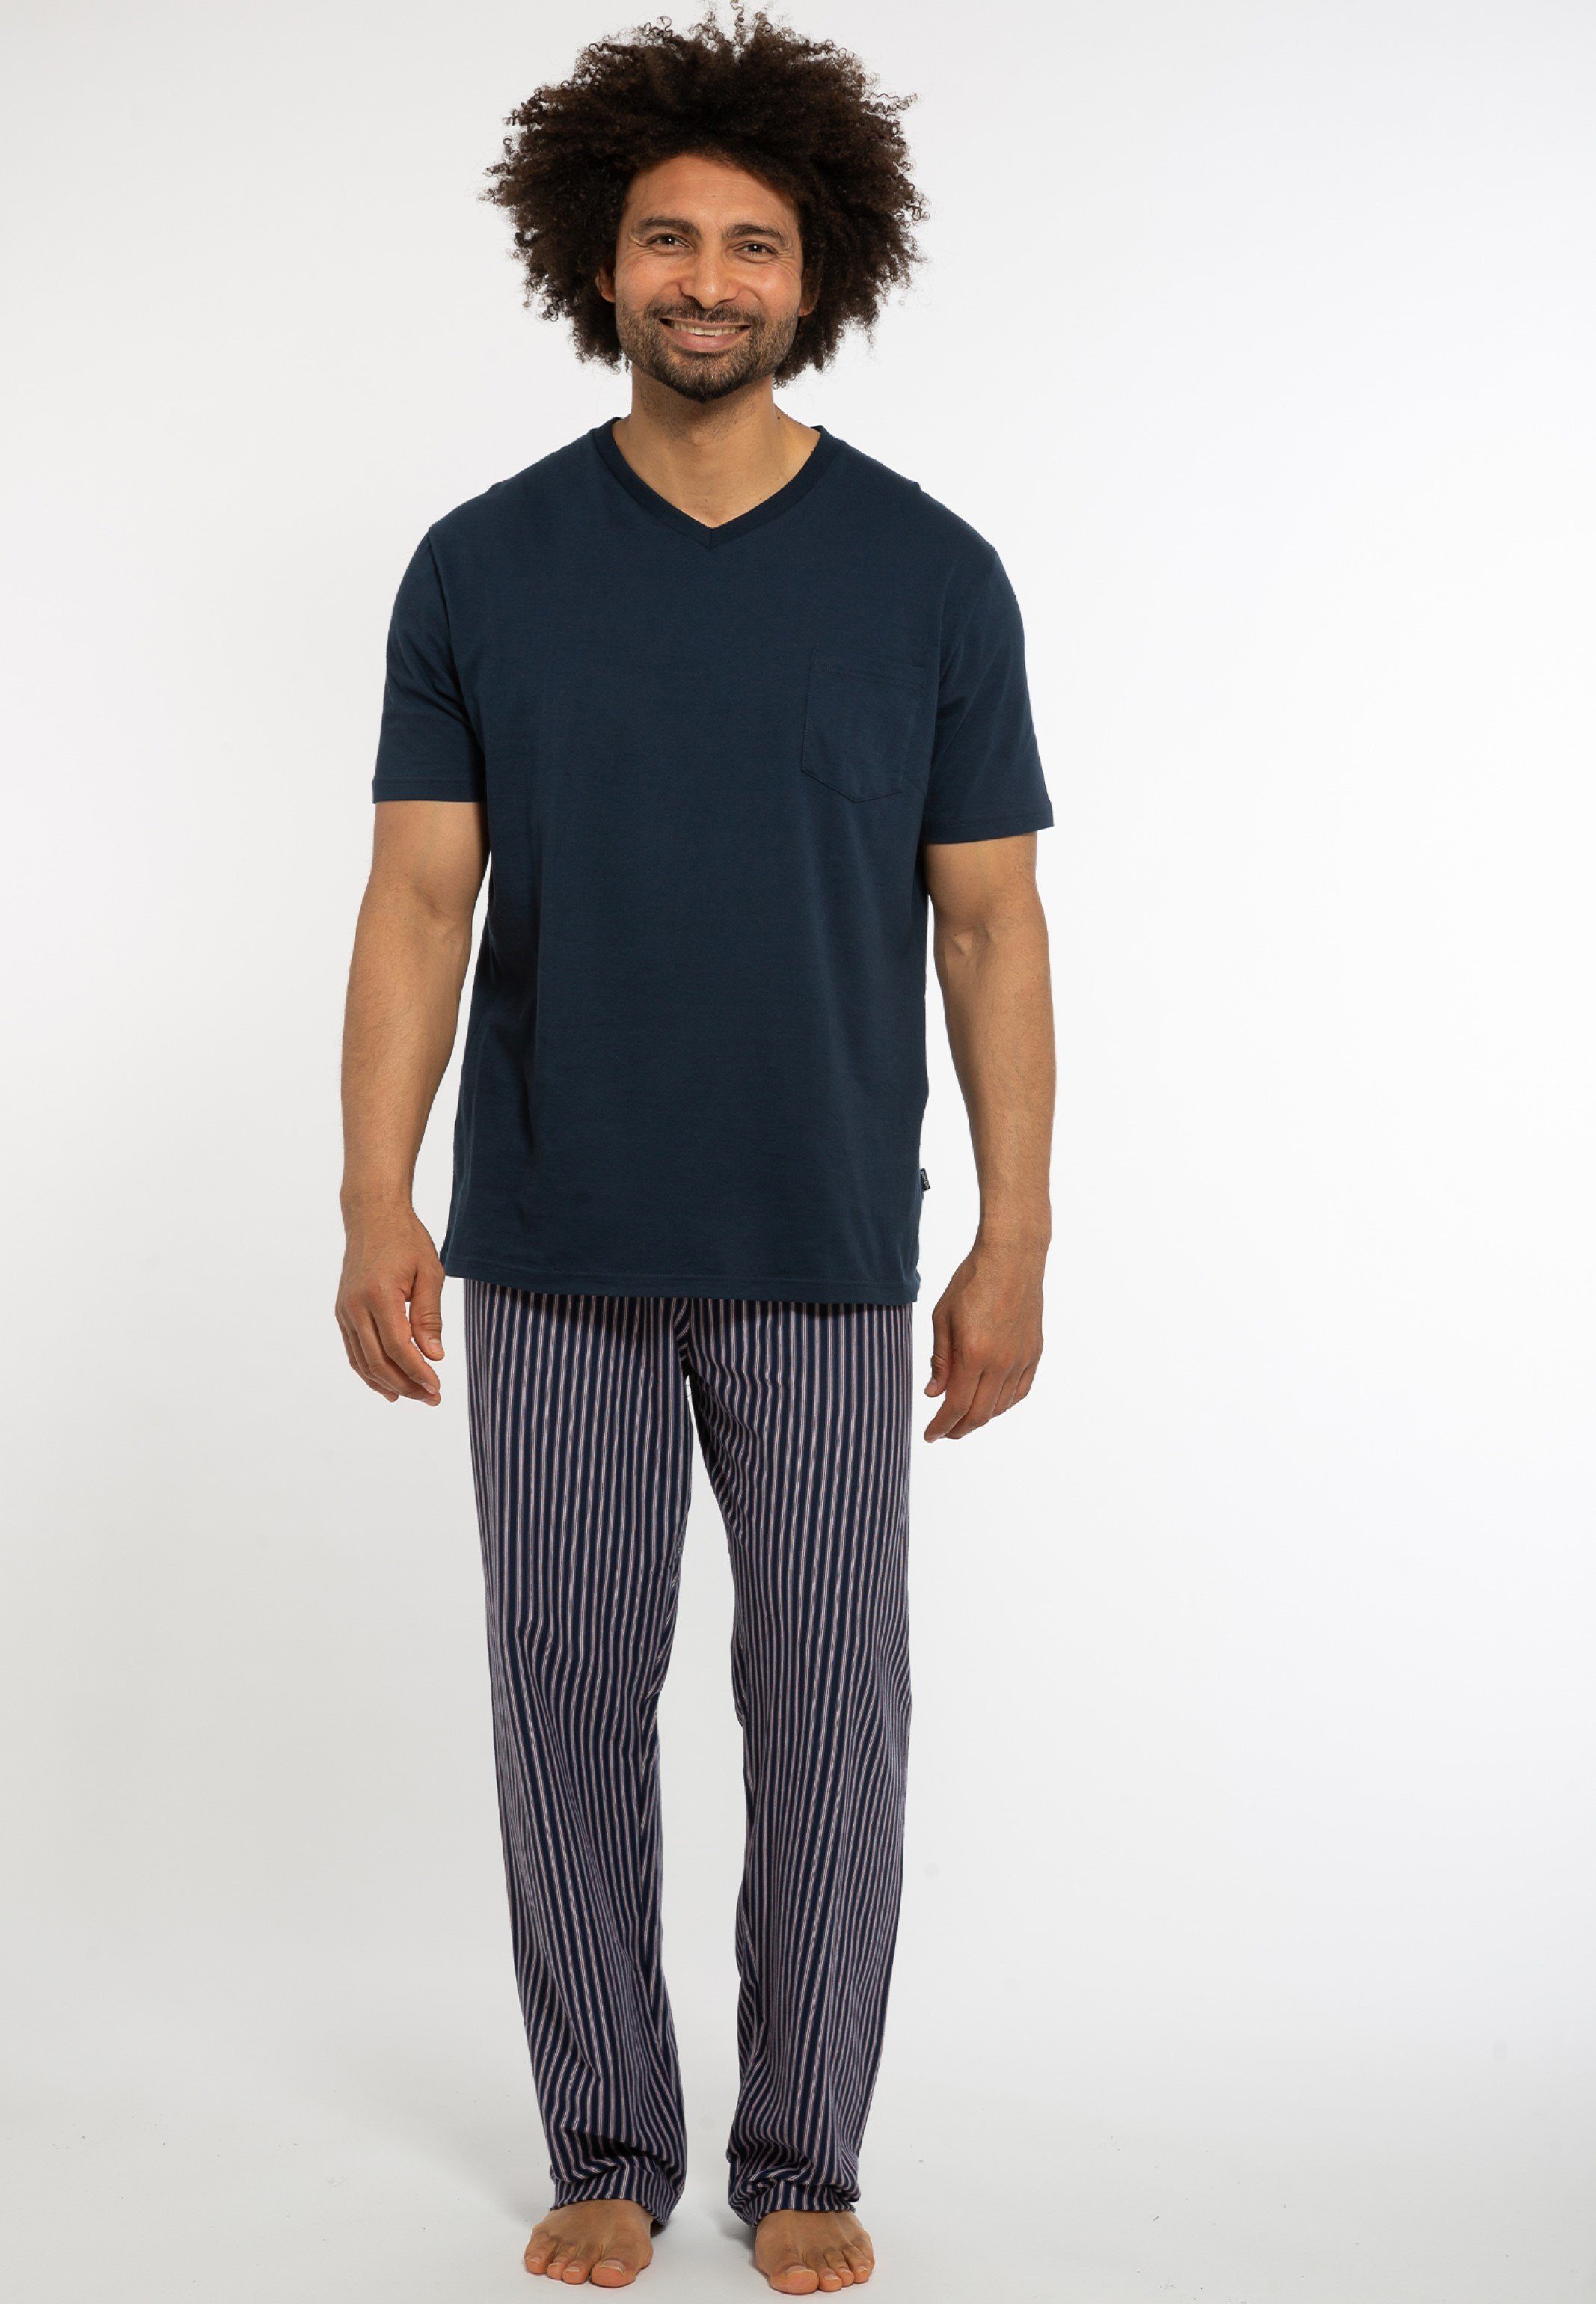 Götzburg Pyjama mit V-Ausschnitt rot-dunkelblau Gemustert Übergröße 